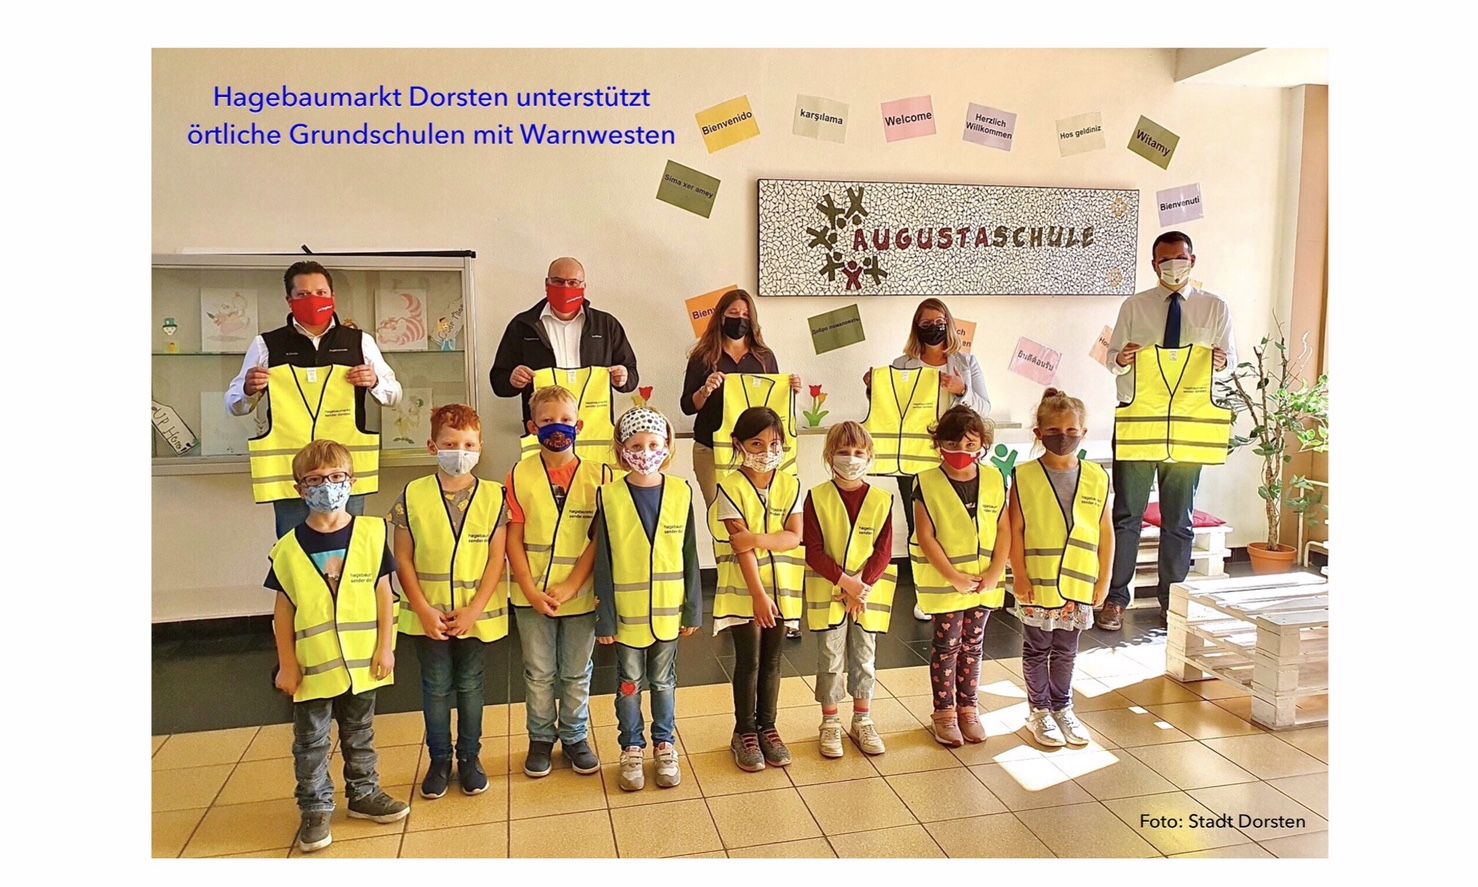 Hagebaumarkt unterstützt Dorstener Grundschulen: Warnwesten sorgen für einen sicheren Weg